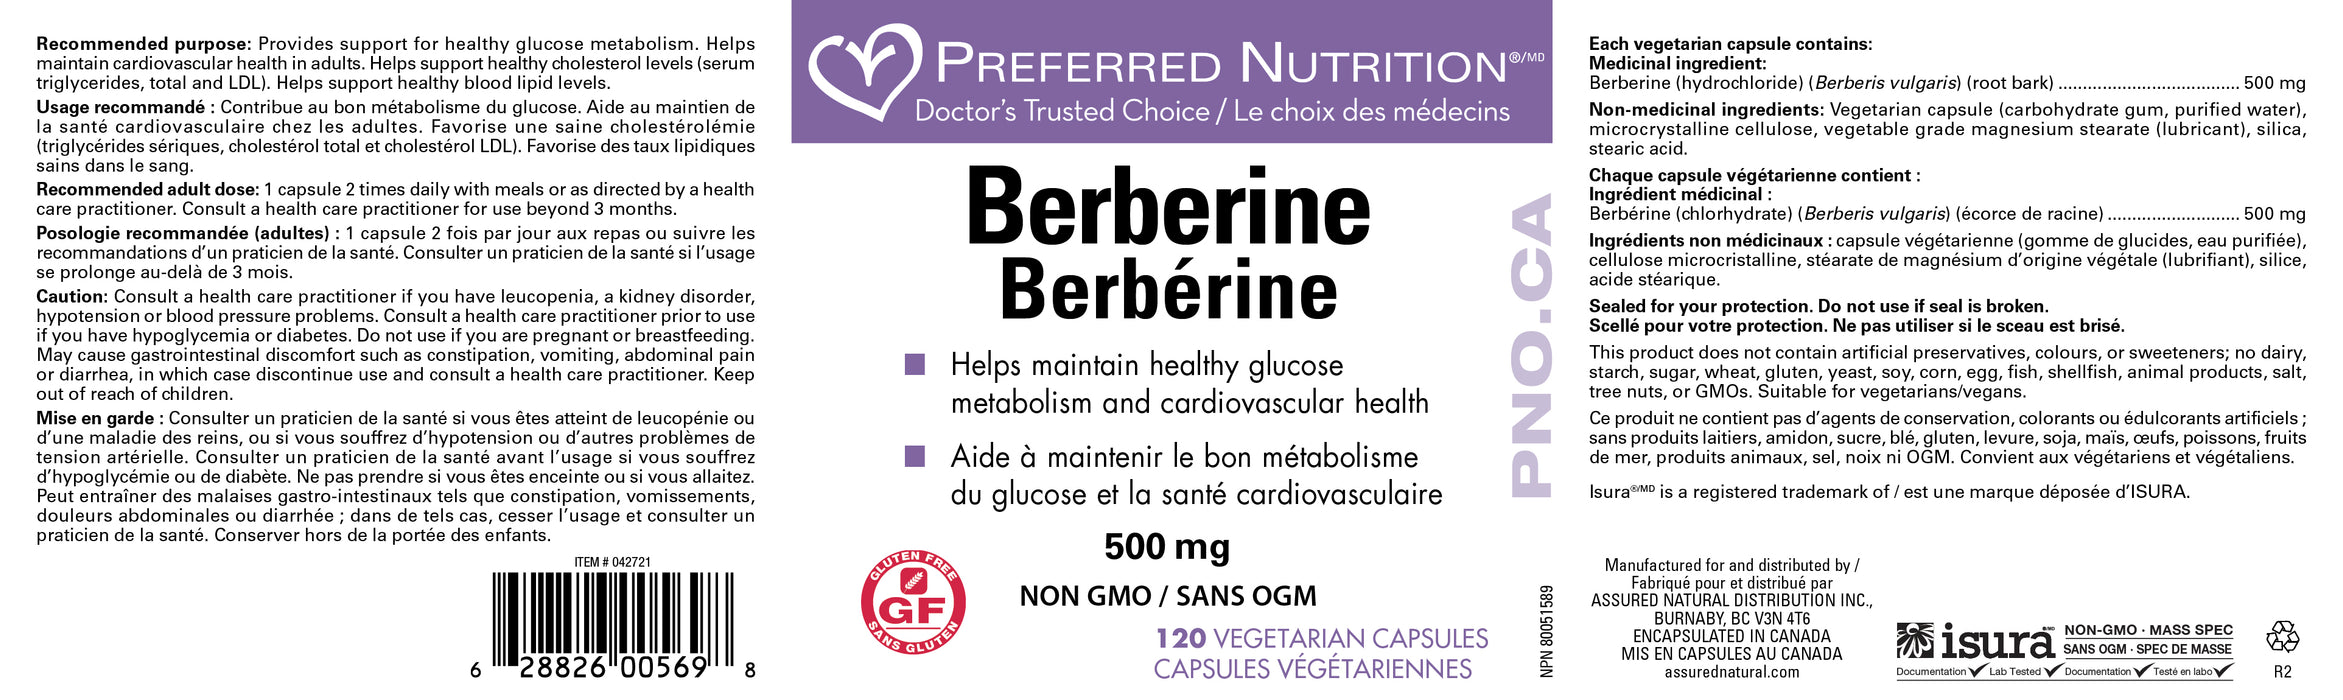 Preferred Nutrition Berberine 120 Veg Capsules